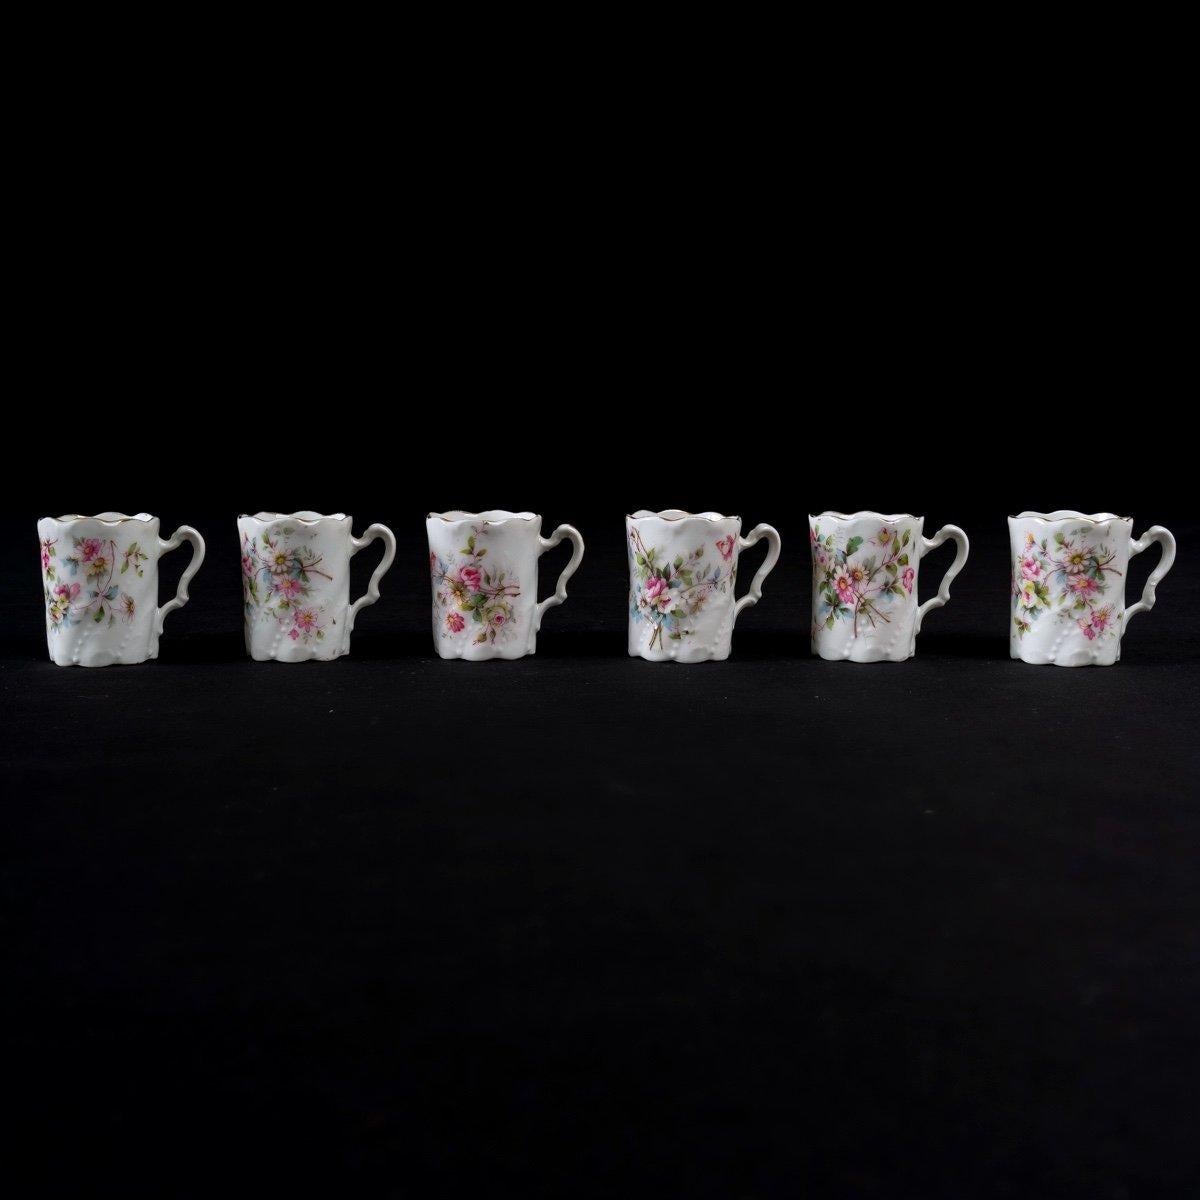 Mocha Service - Six Cups - Sèvres Porcelain - Period: Art Nouveau For Sale 3